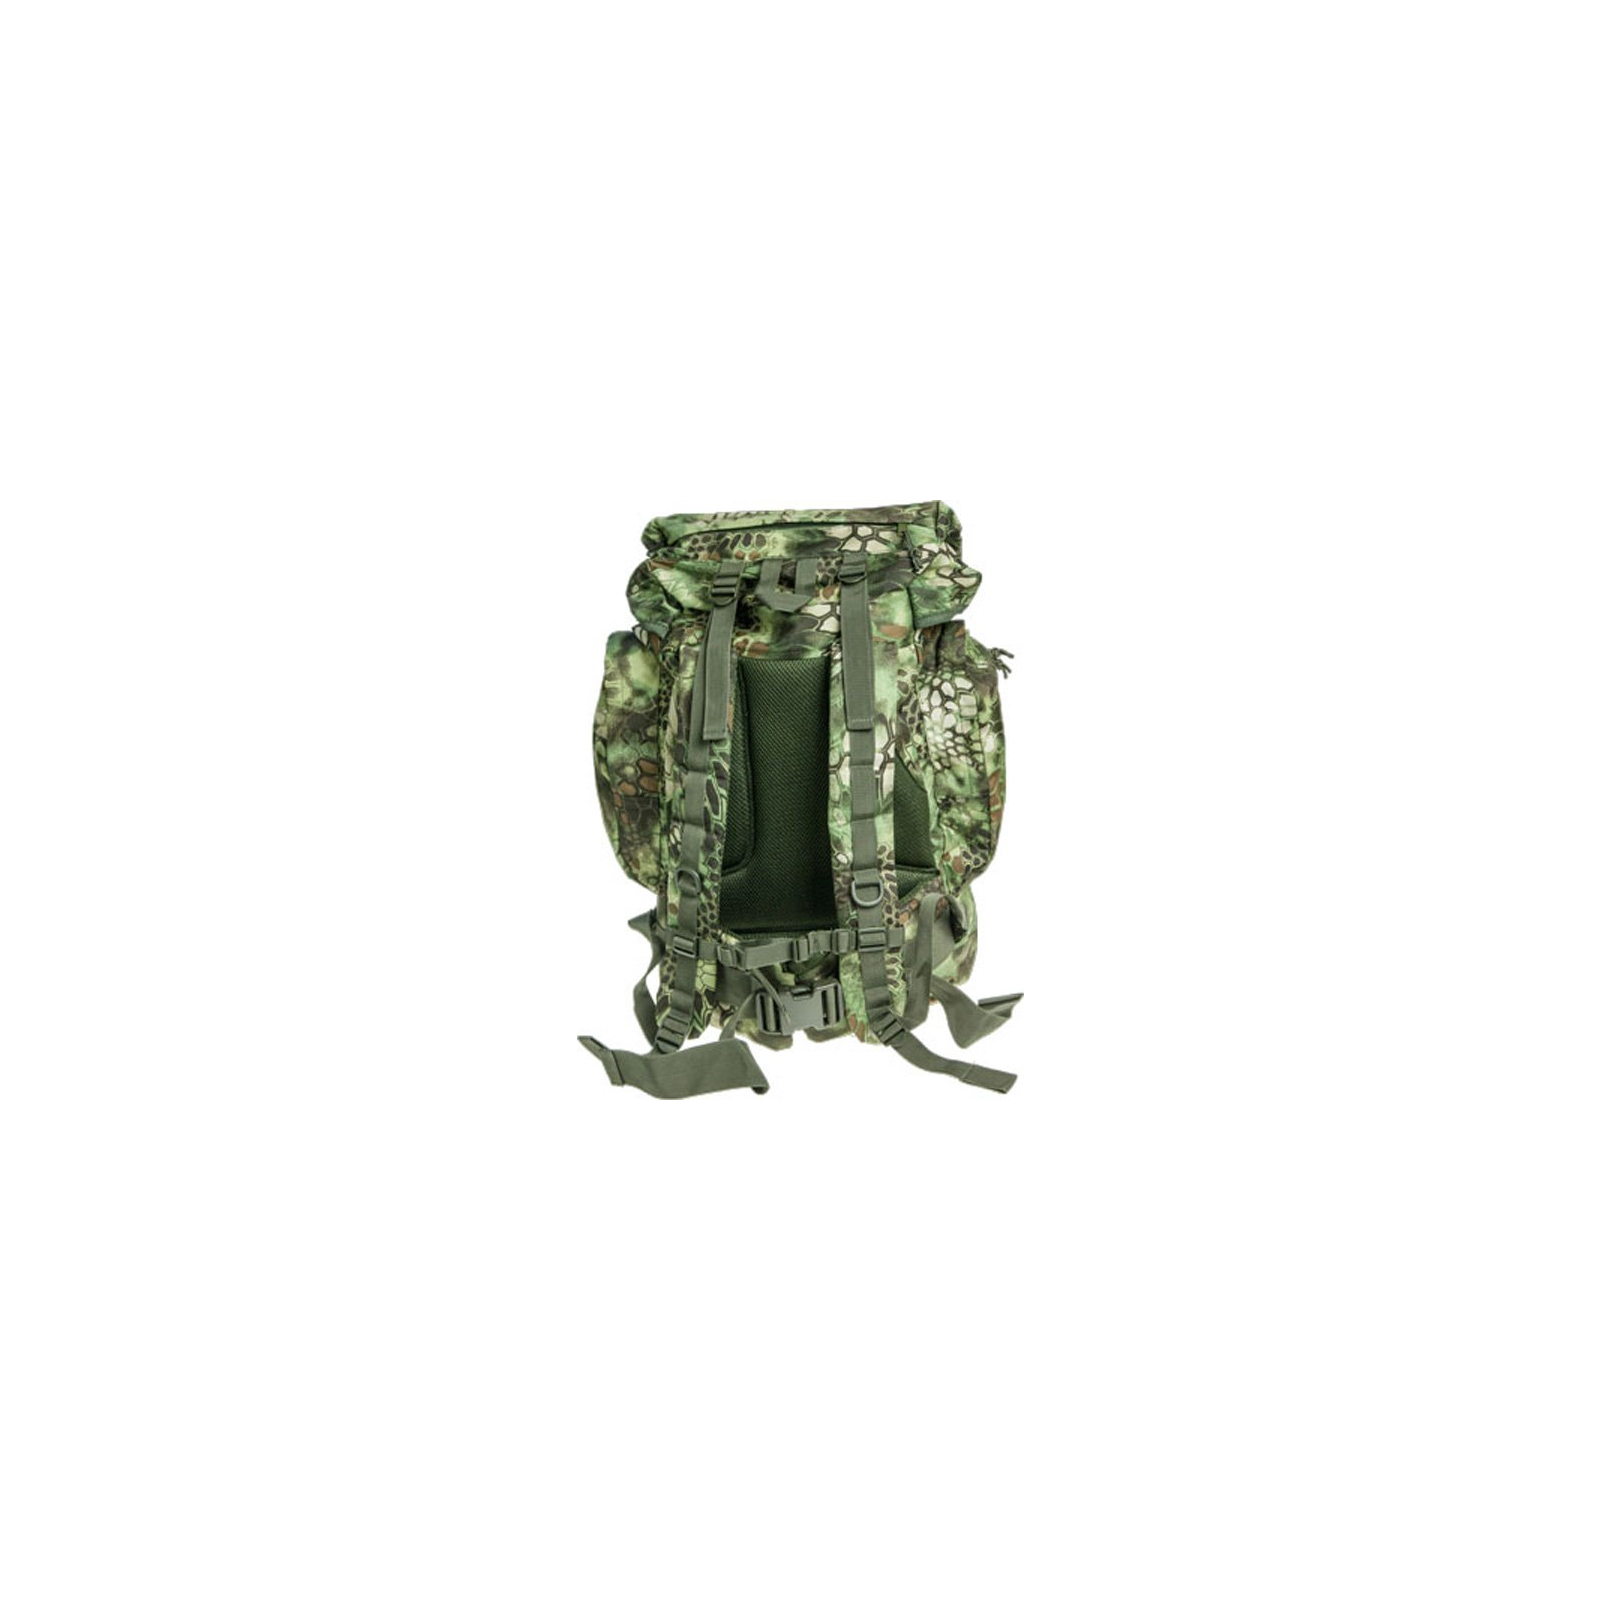 Рюкзак туристичний Skif Tac тактический полевой 45 литров kryptek green (GB0075-KGR) зображення 2